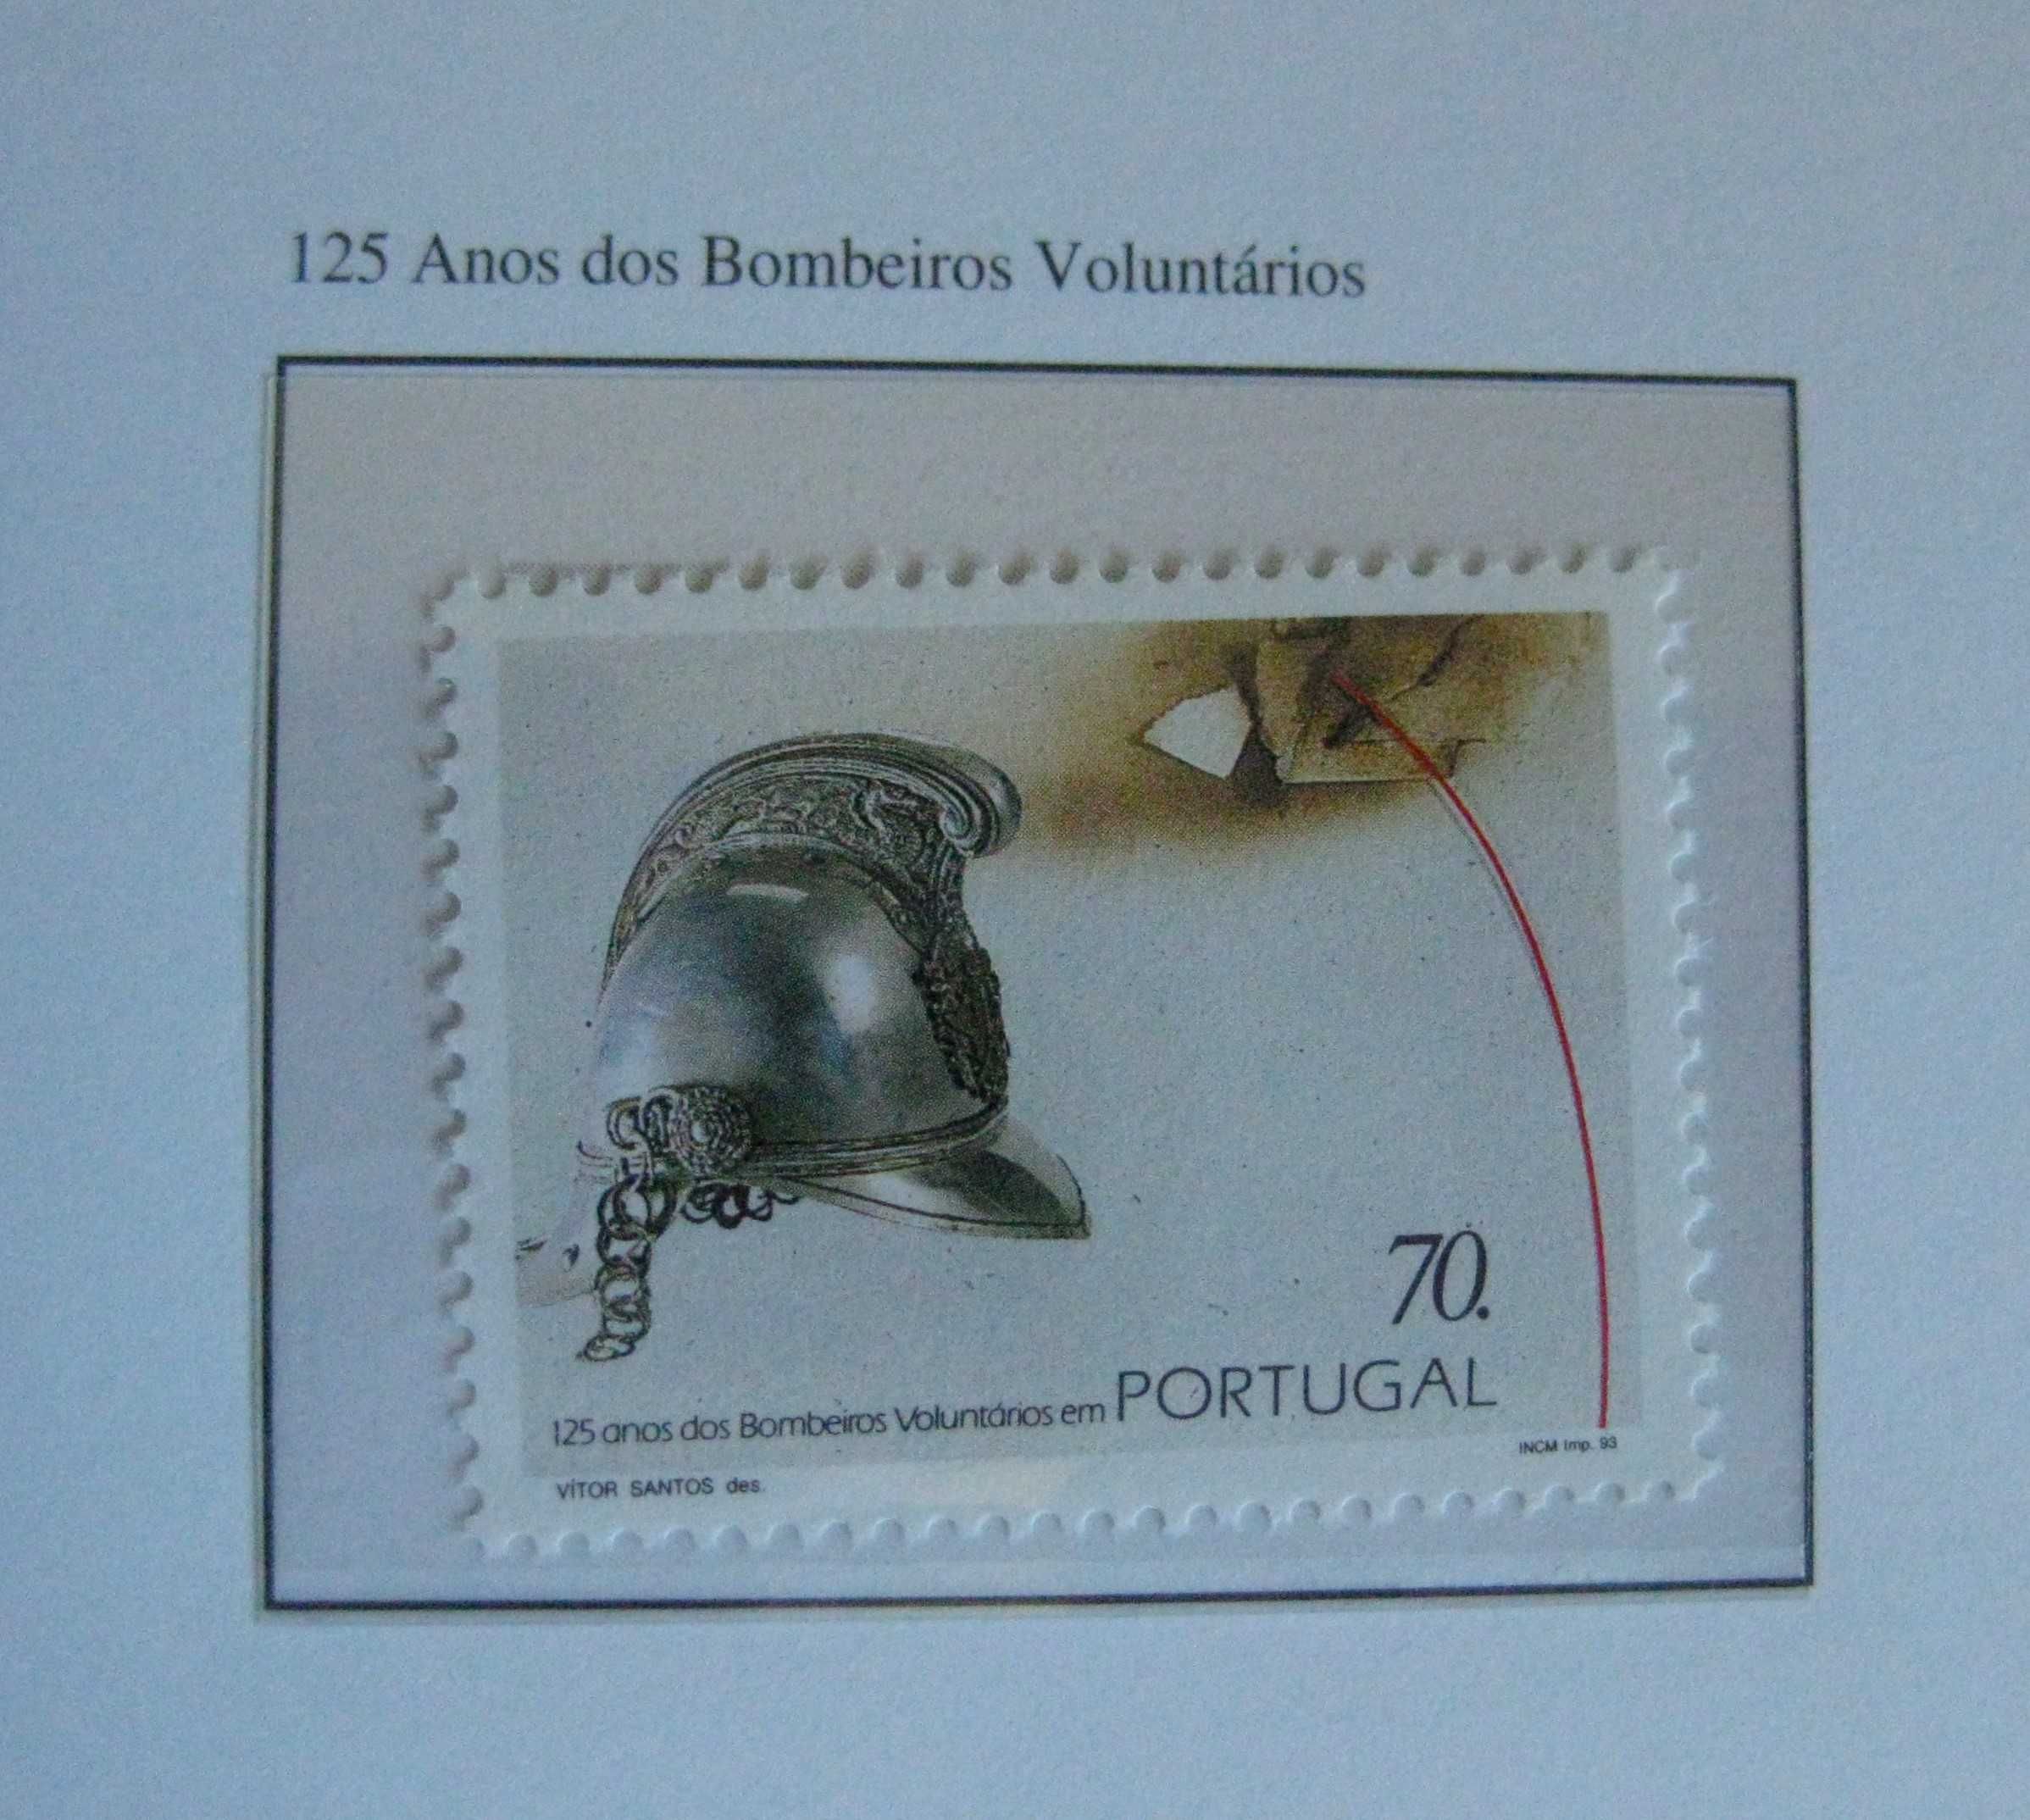 125 Anos dos Bombeiros Voluntarios em Portugal - 1993